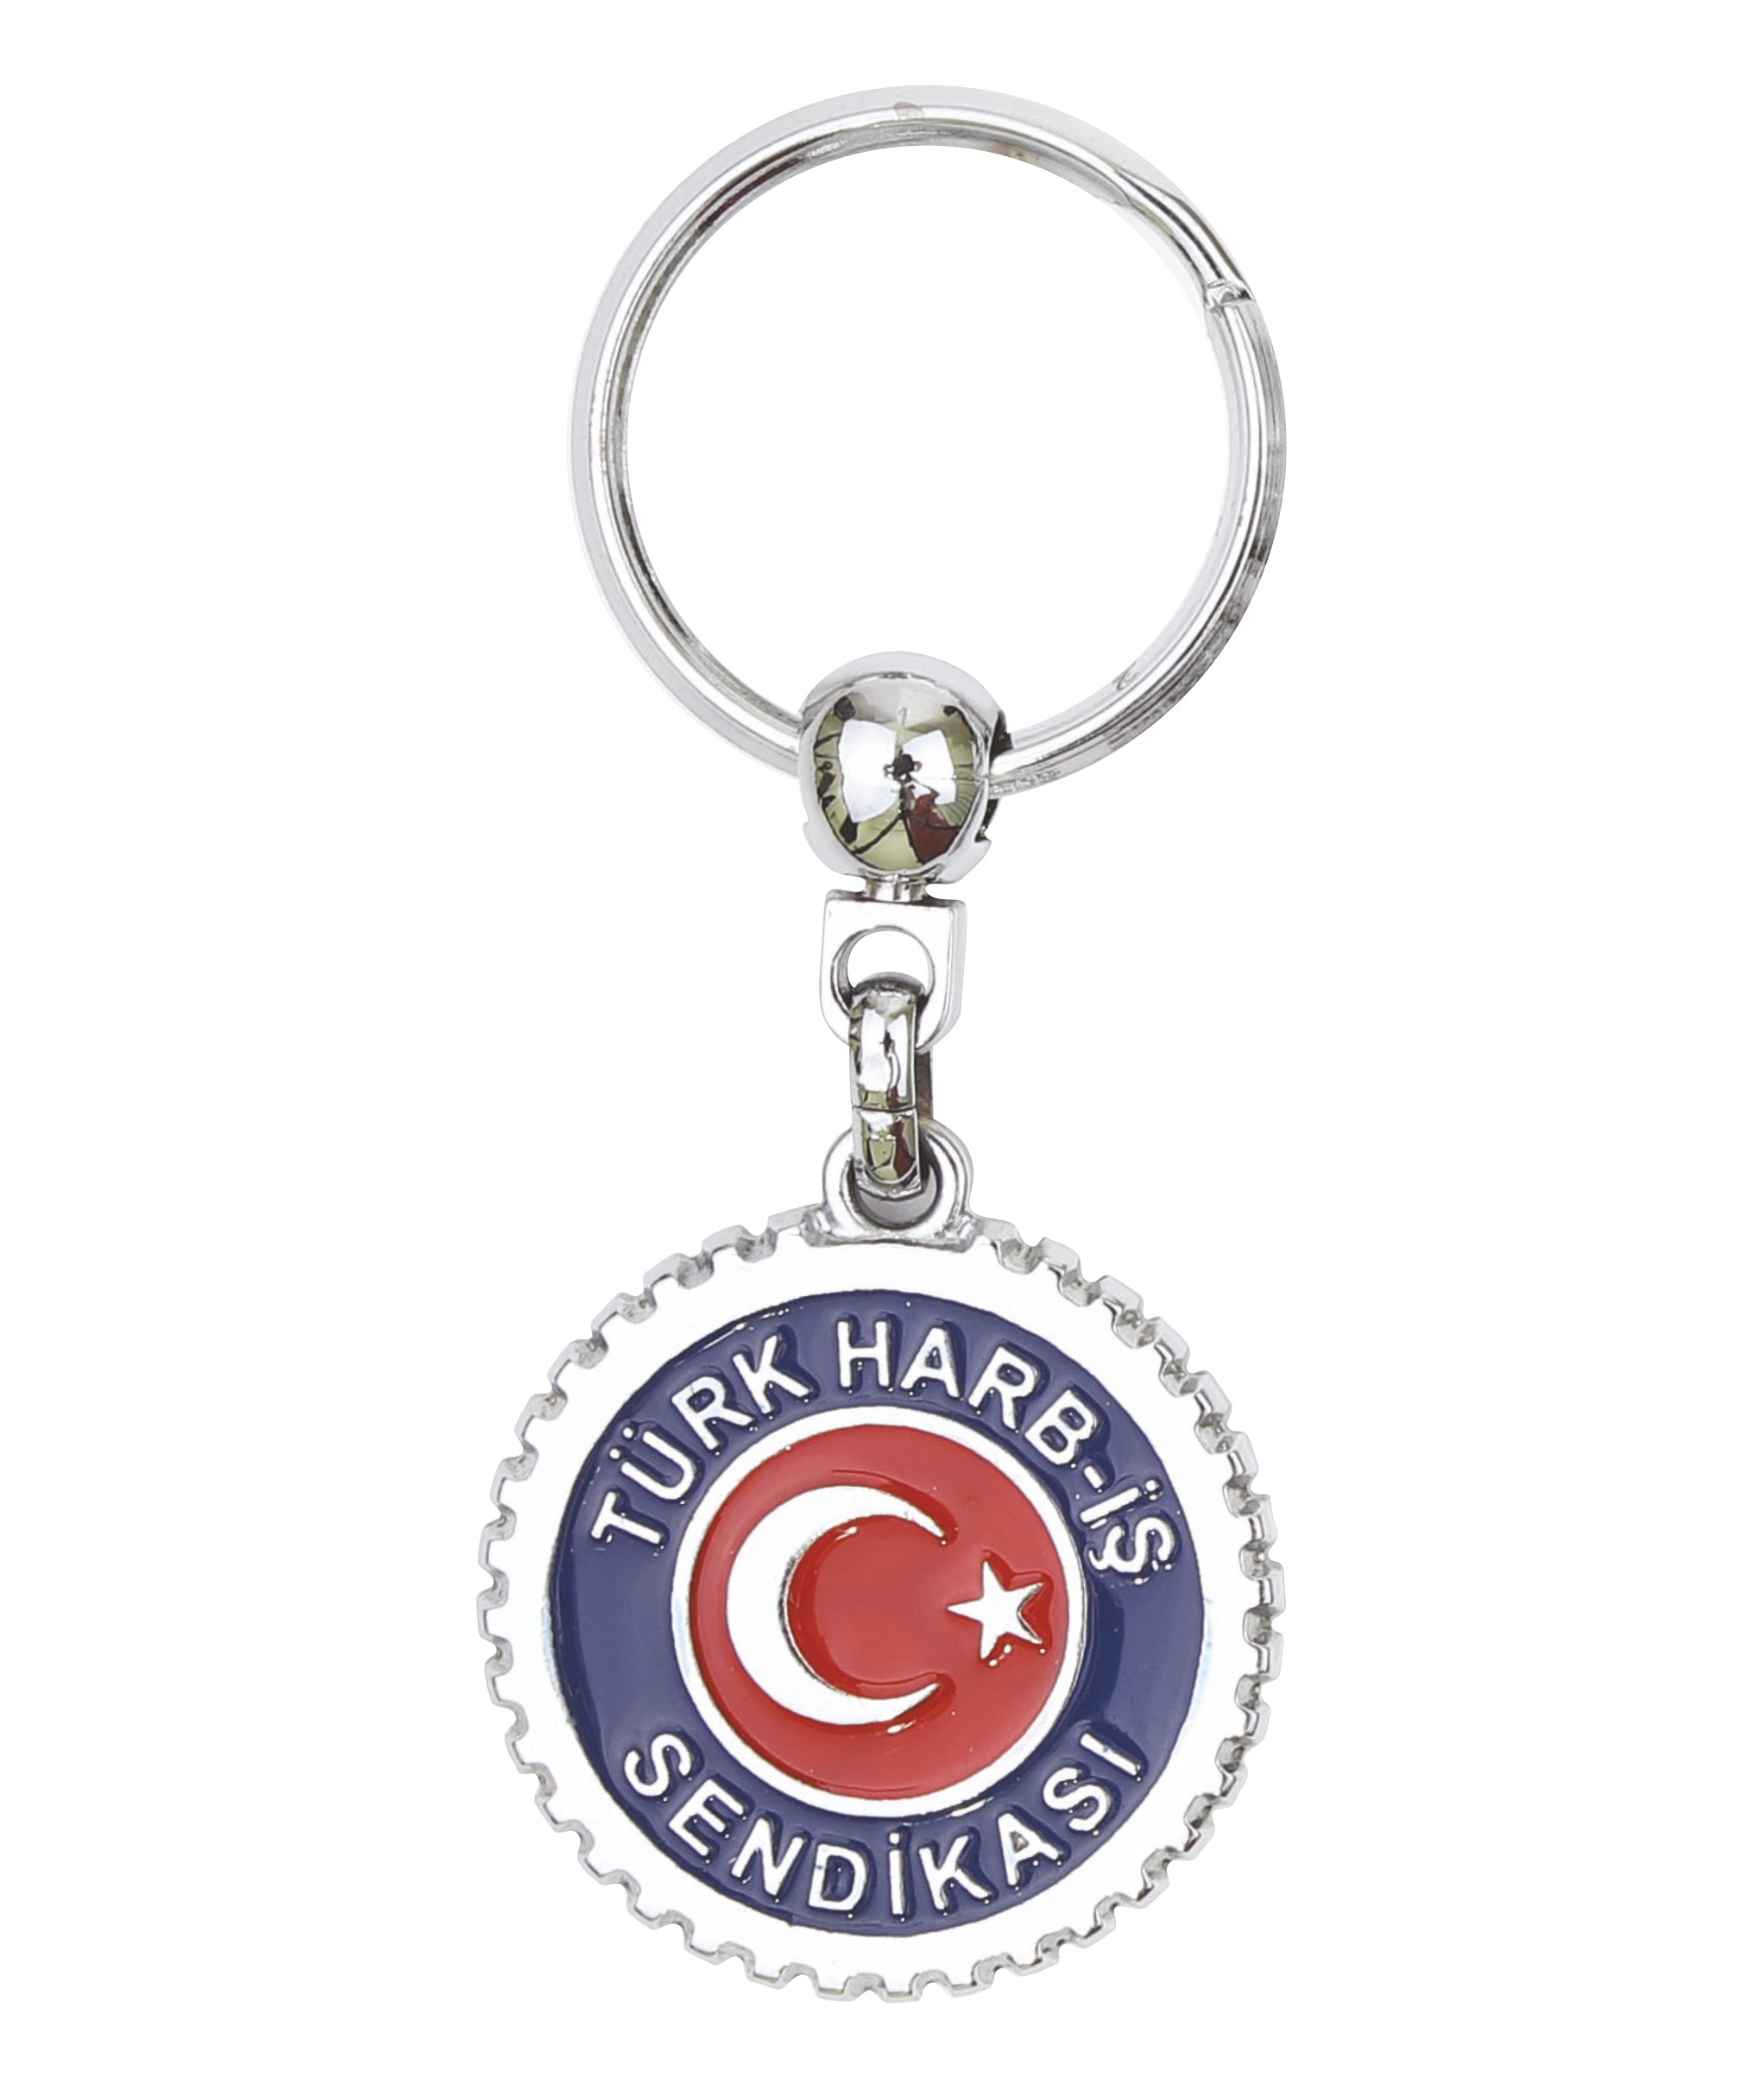 Türk Harb iş Sendikası Logolu Anahtarlık